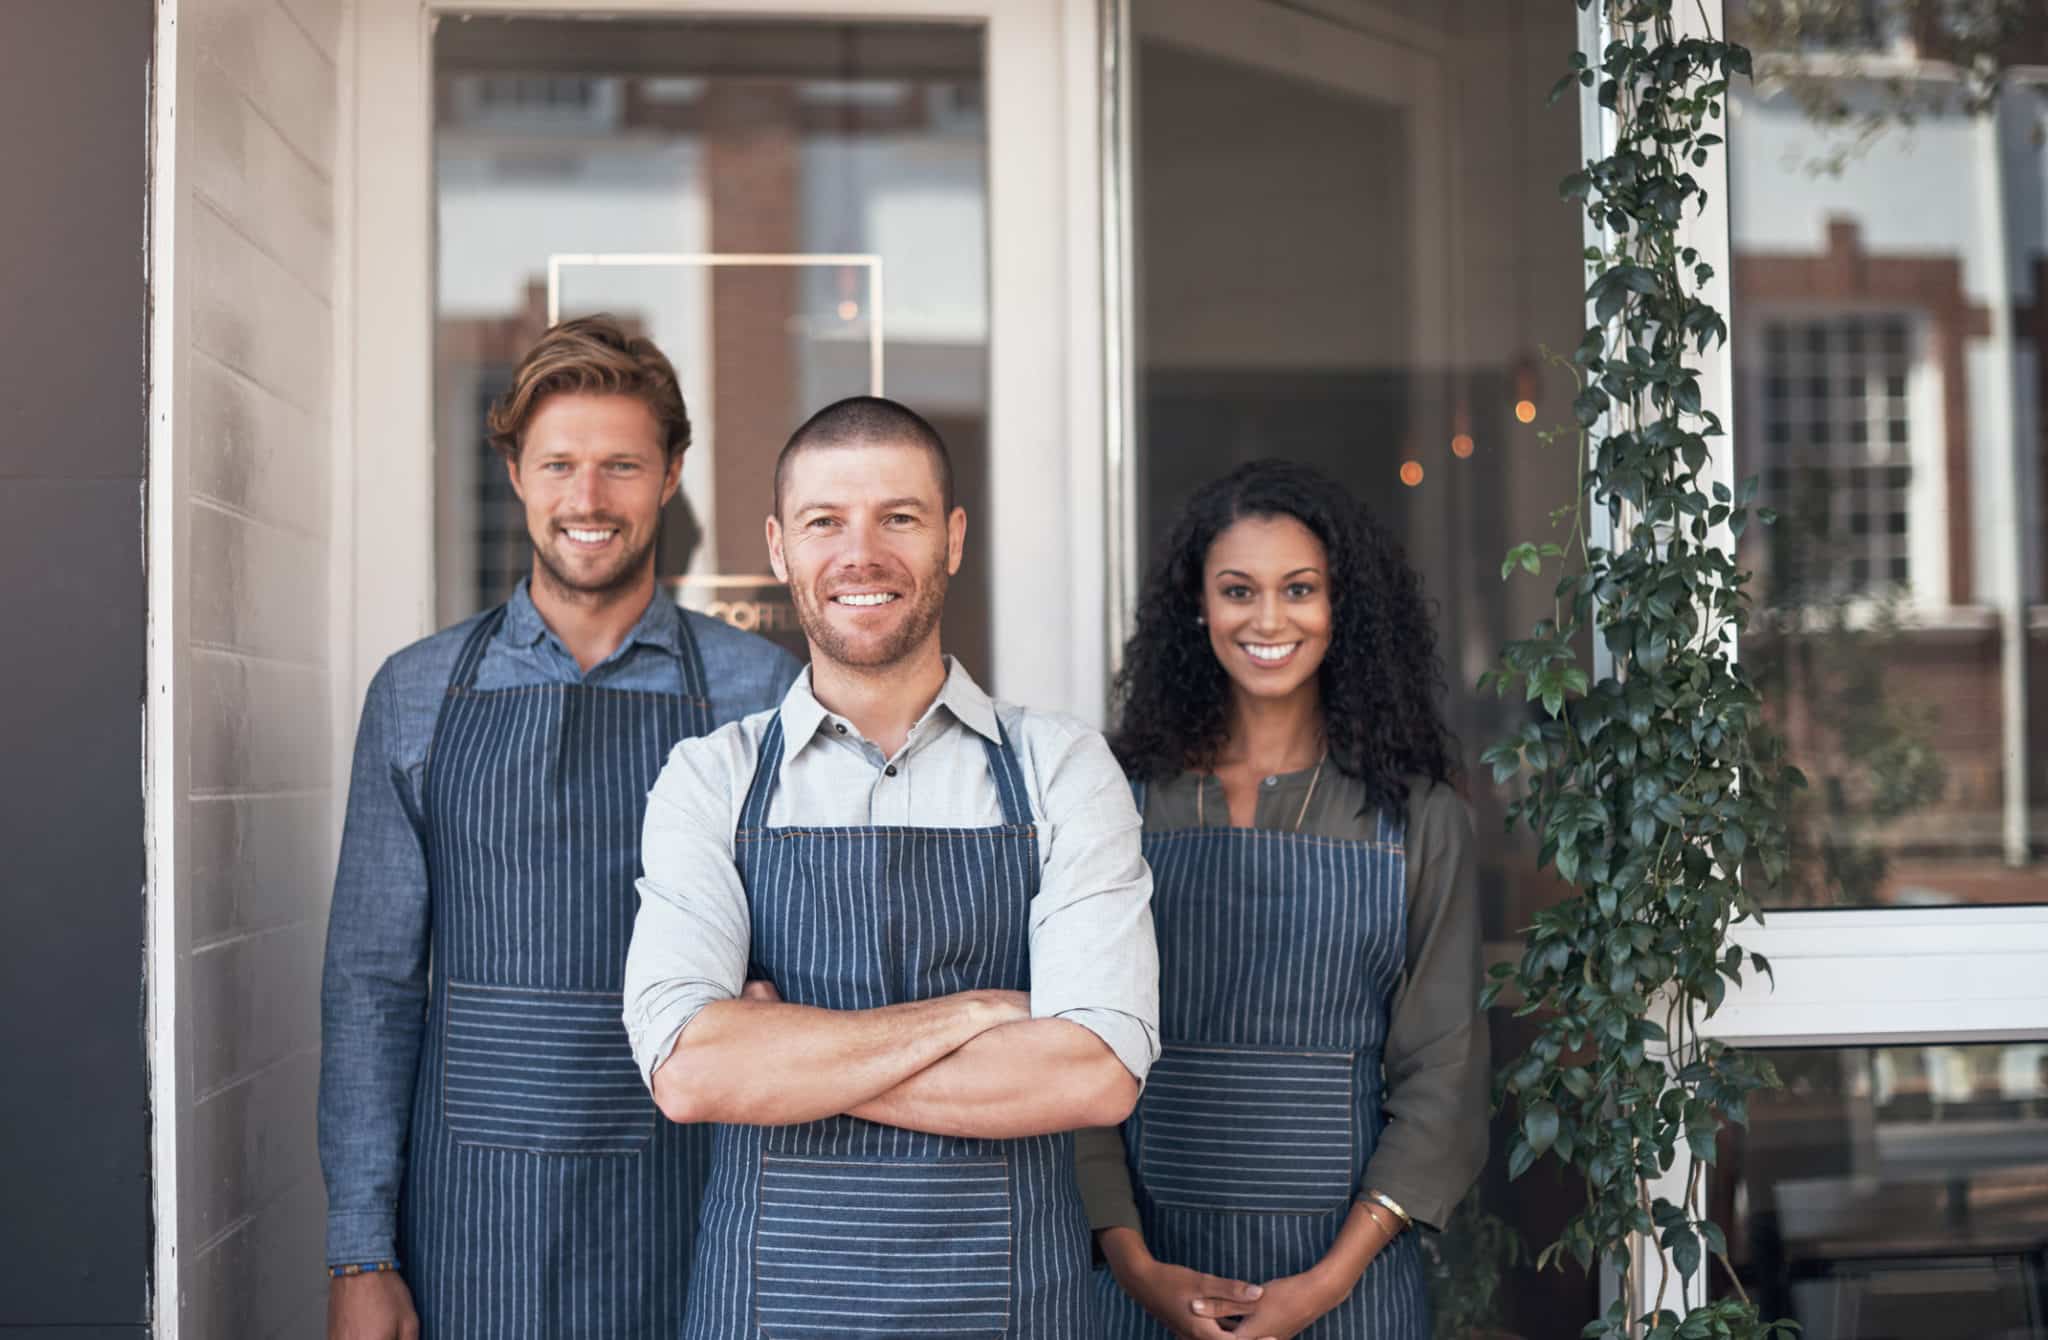 12 Steps for Hiring The Best Seasonal Restaurant Employees